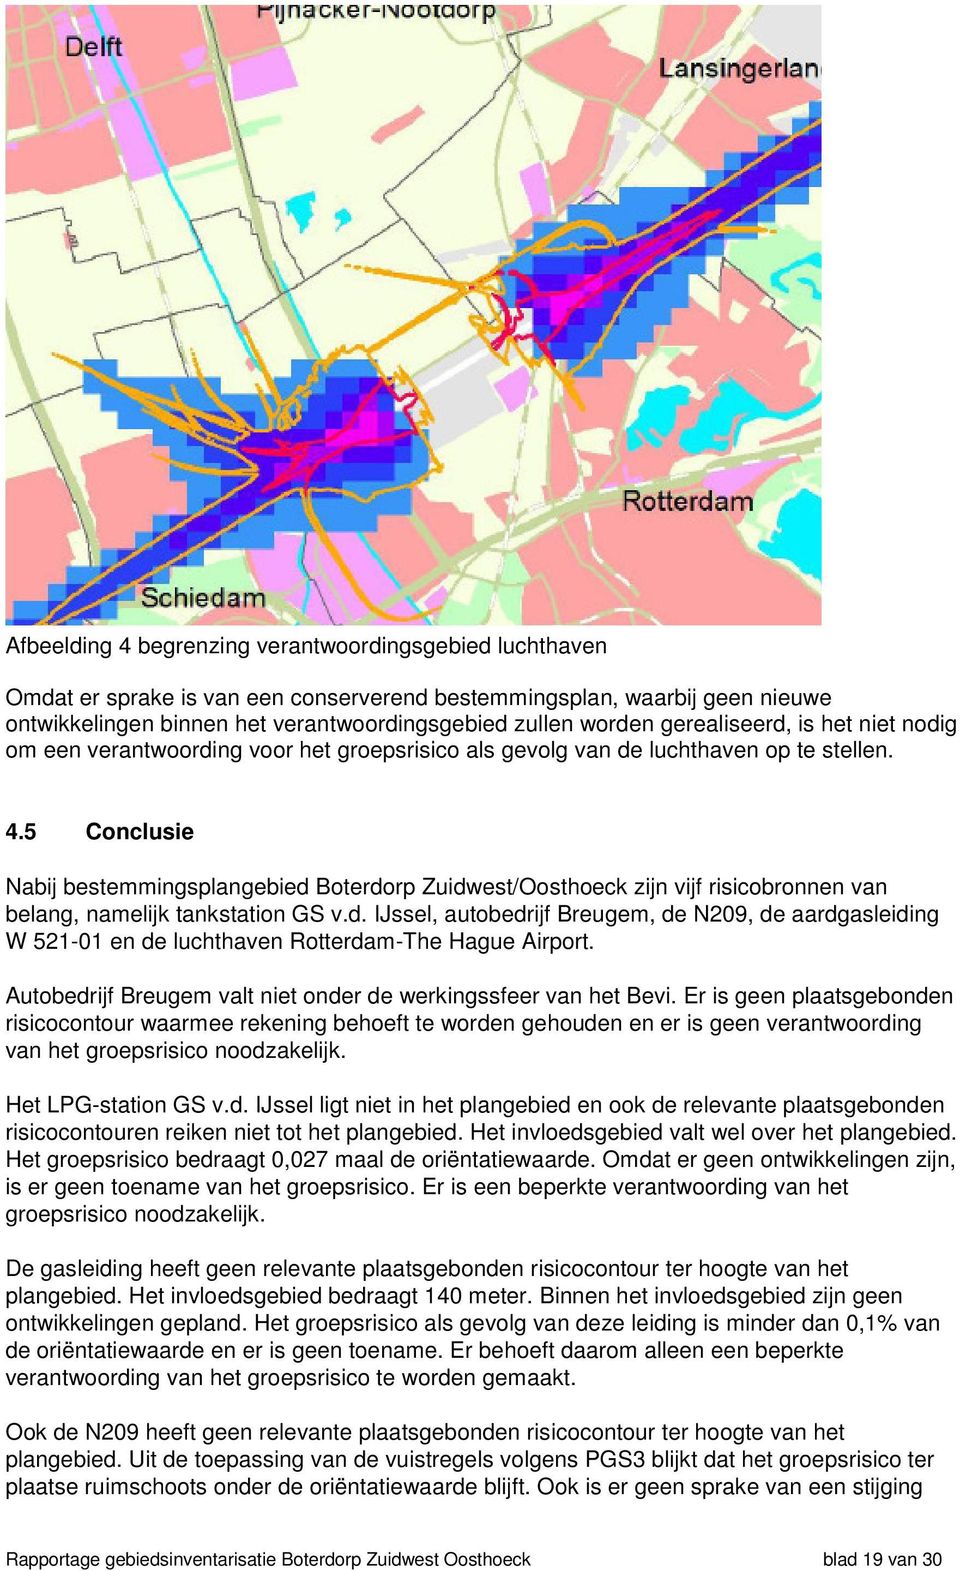 5 Conclusie Nabij bestemmingsplangebied Boterdorp Zuidwest/Oosthoeck zijn vijf risicobronnen van belang, namelijk tankstation GS v.d. IJssel, autobedrijf Breugem, de N209, de aardgasleiding W 521-01 en de luchthaven Rotterdam-The Hague Airport.